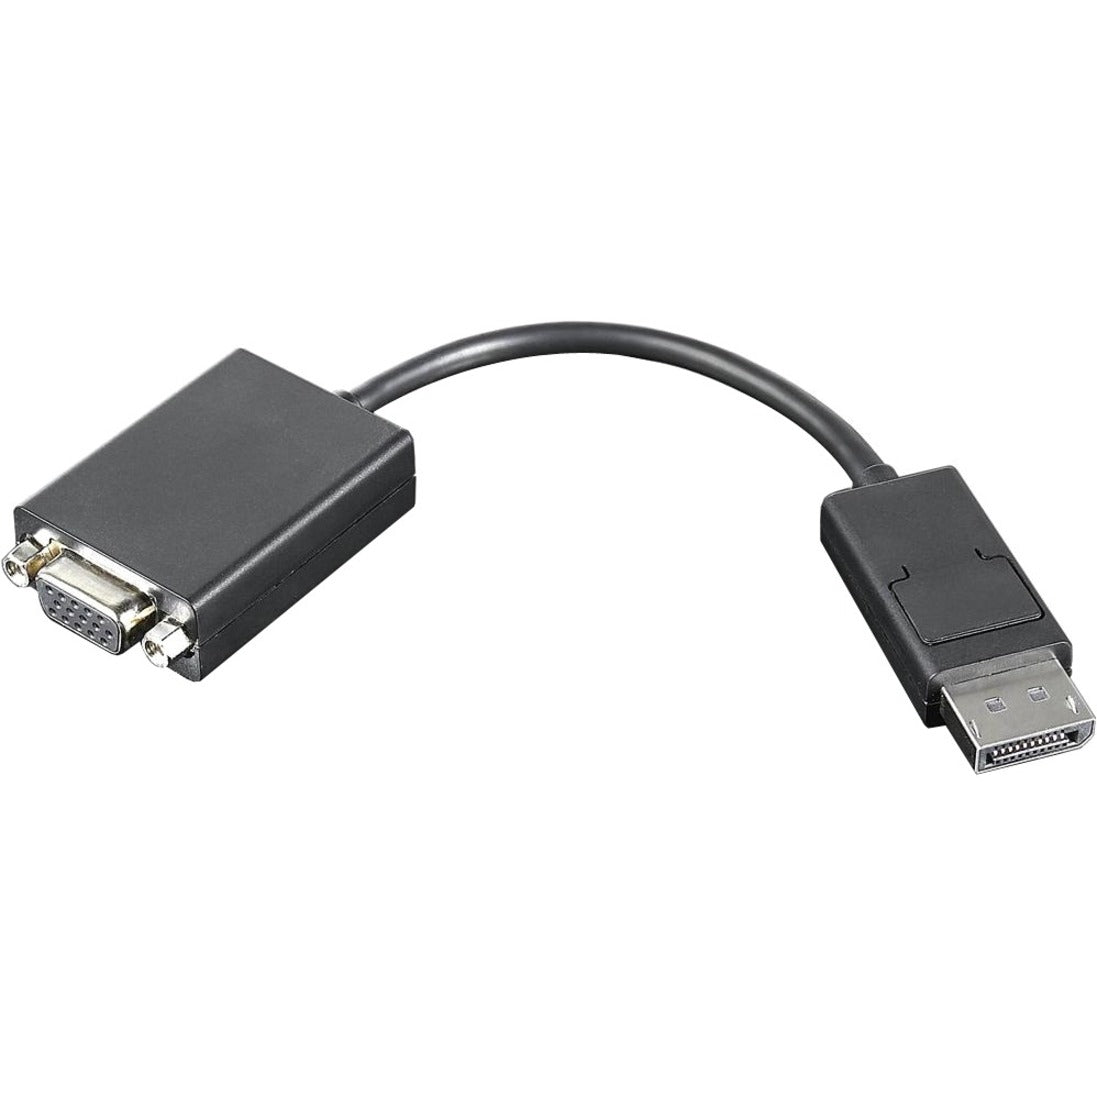 Lenovo VGA Cable - DisplayPort Video - HD-15 VGA - 7.8", High-Quality Lenovo 57Y4393 VGA Cable for Crisp Display and Easy Connection